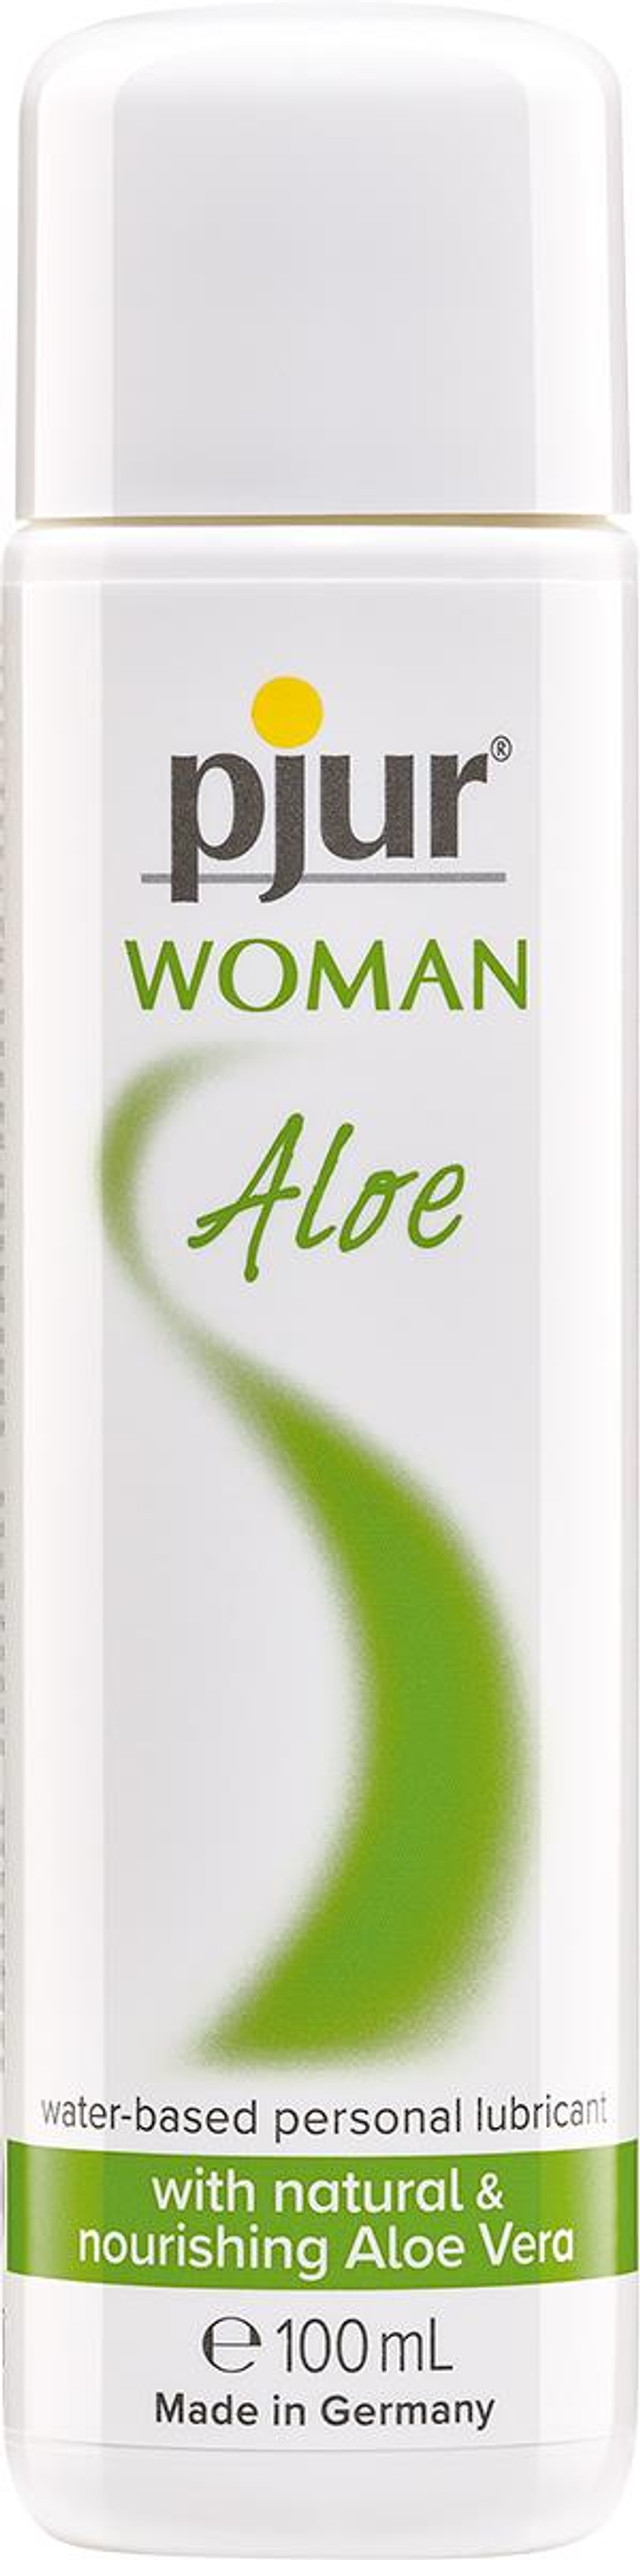 pjur Woman Aloe 100 ml